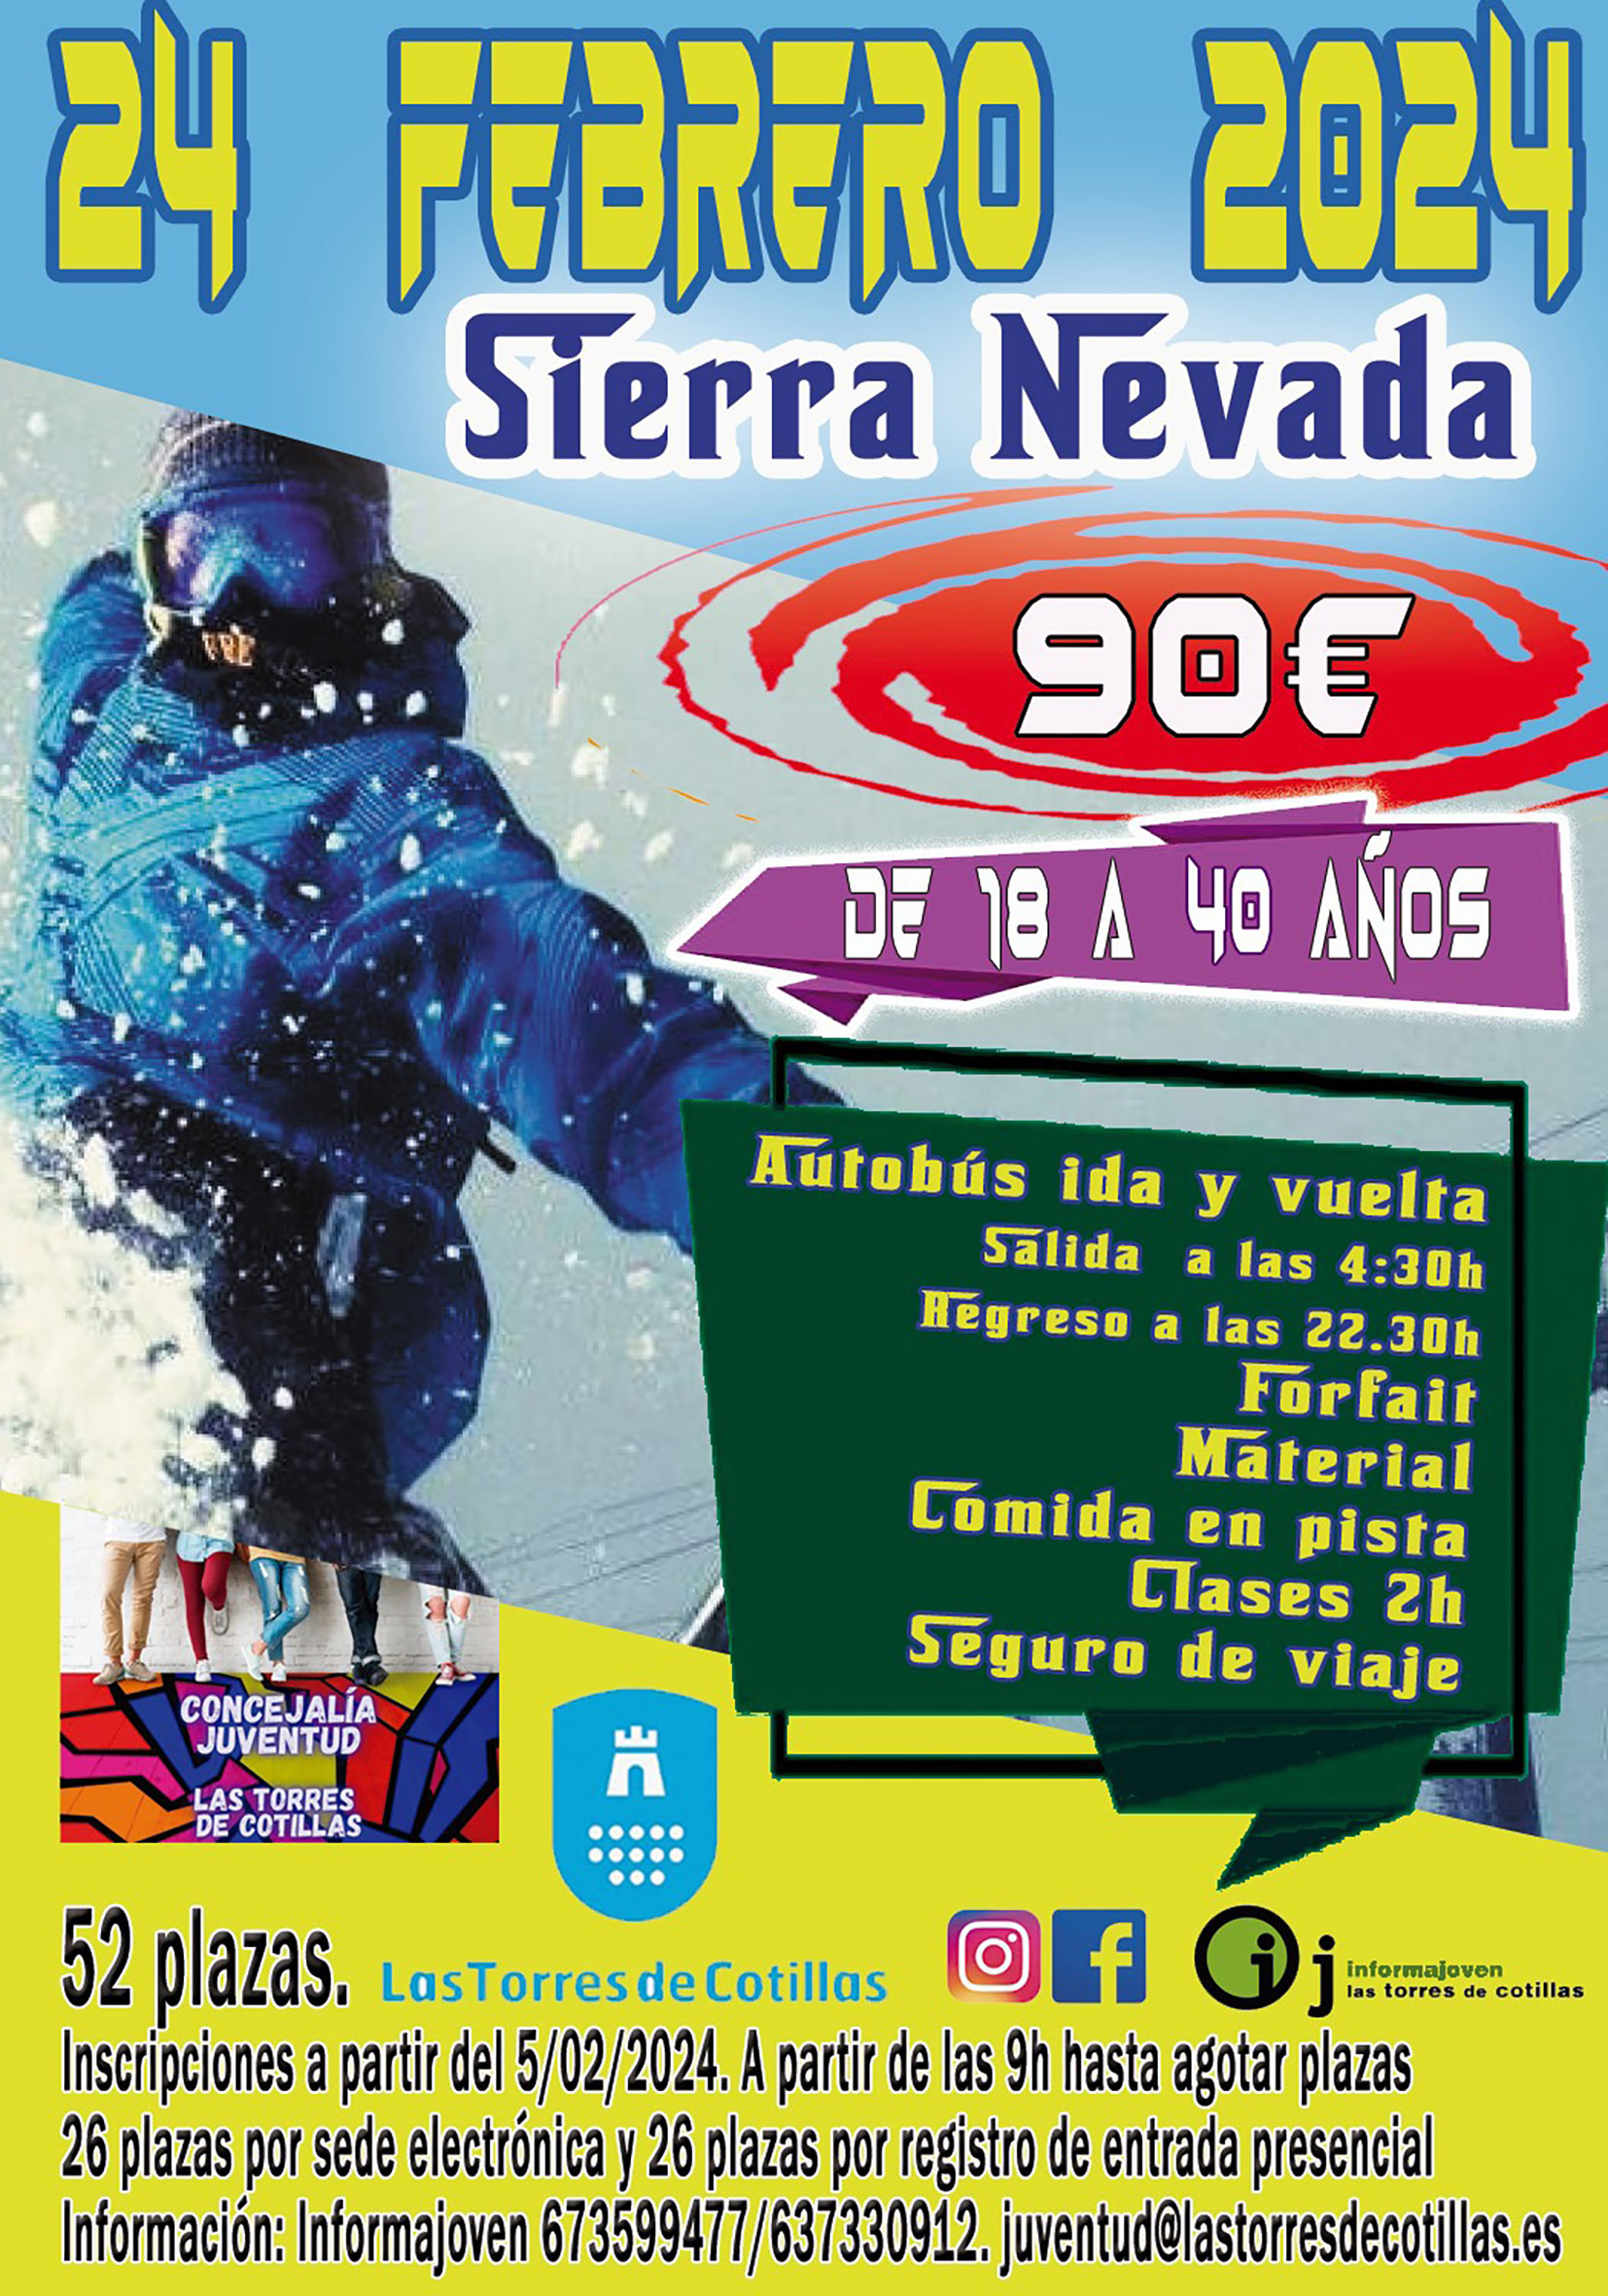 La Concejalía de Juventud organiza un viaje para esquiar en Sierra Nevada